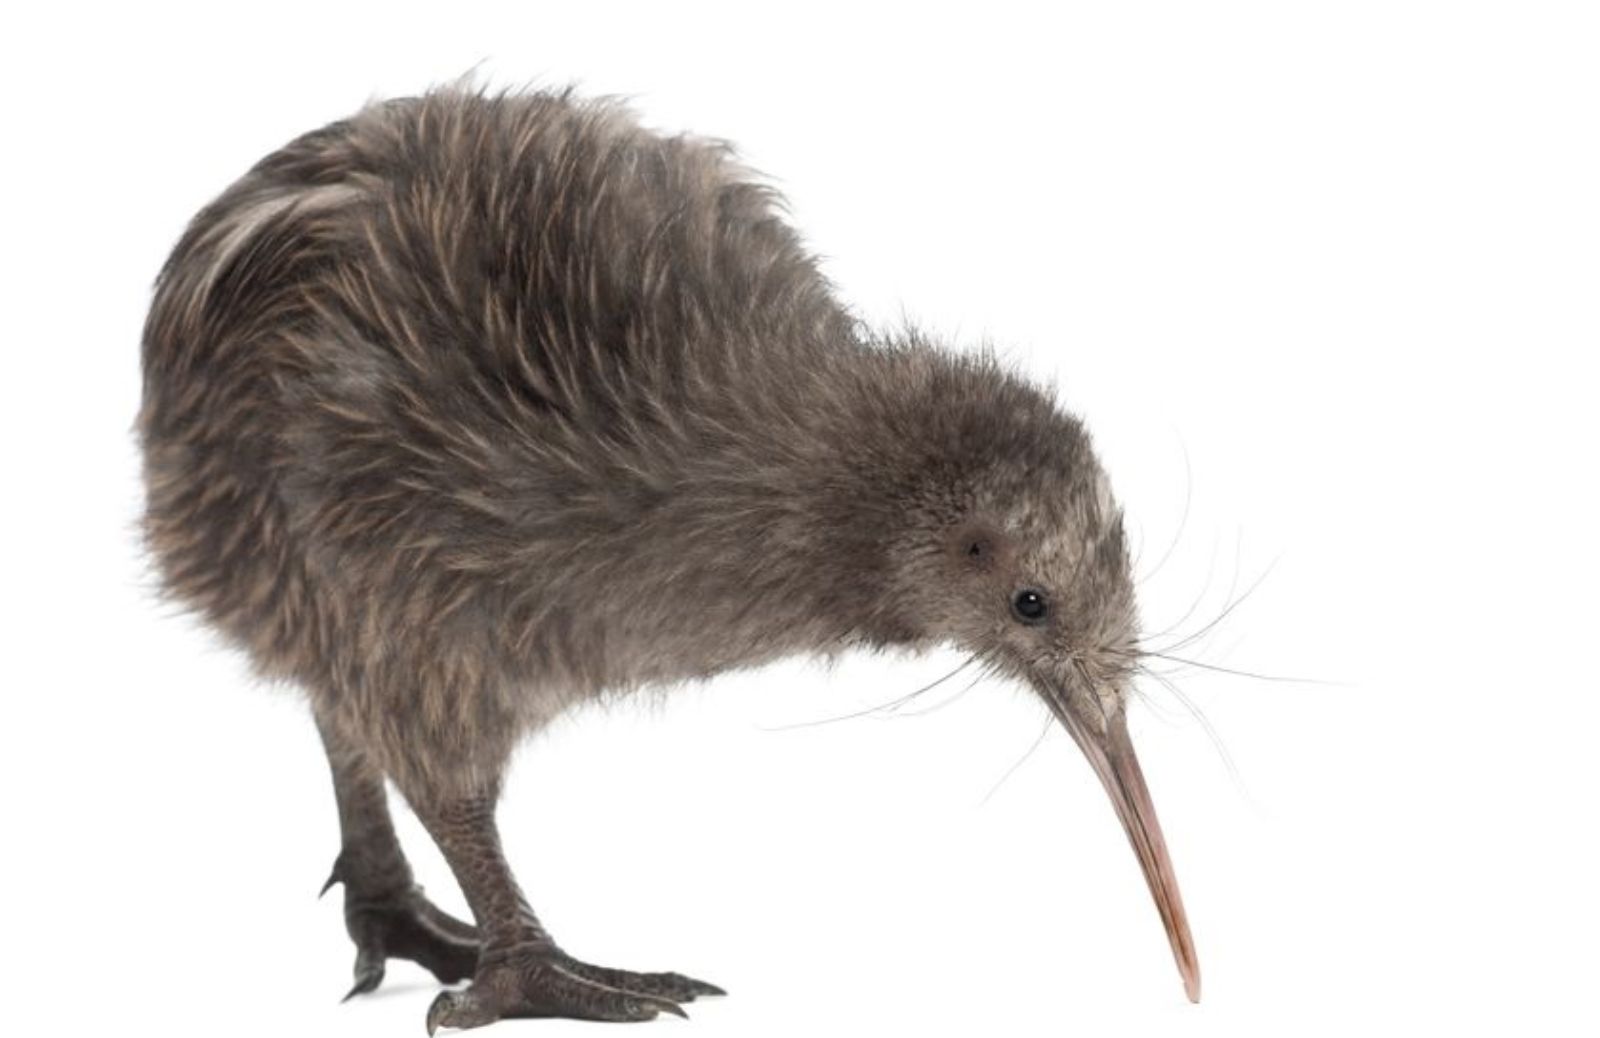 Tutto sul kiwi, l'animale simbolo della Nuova Zelanda